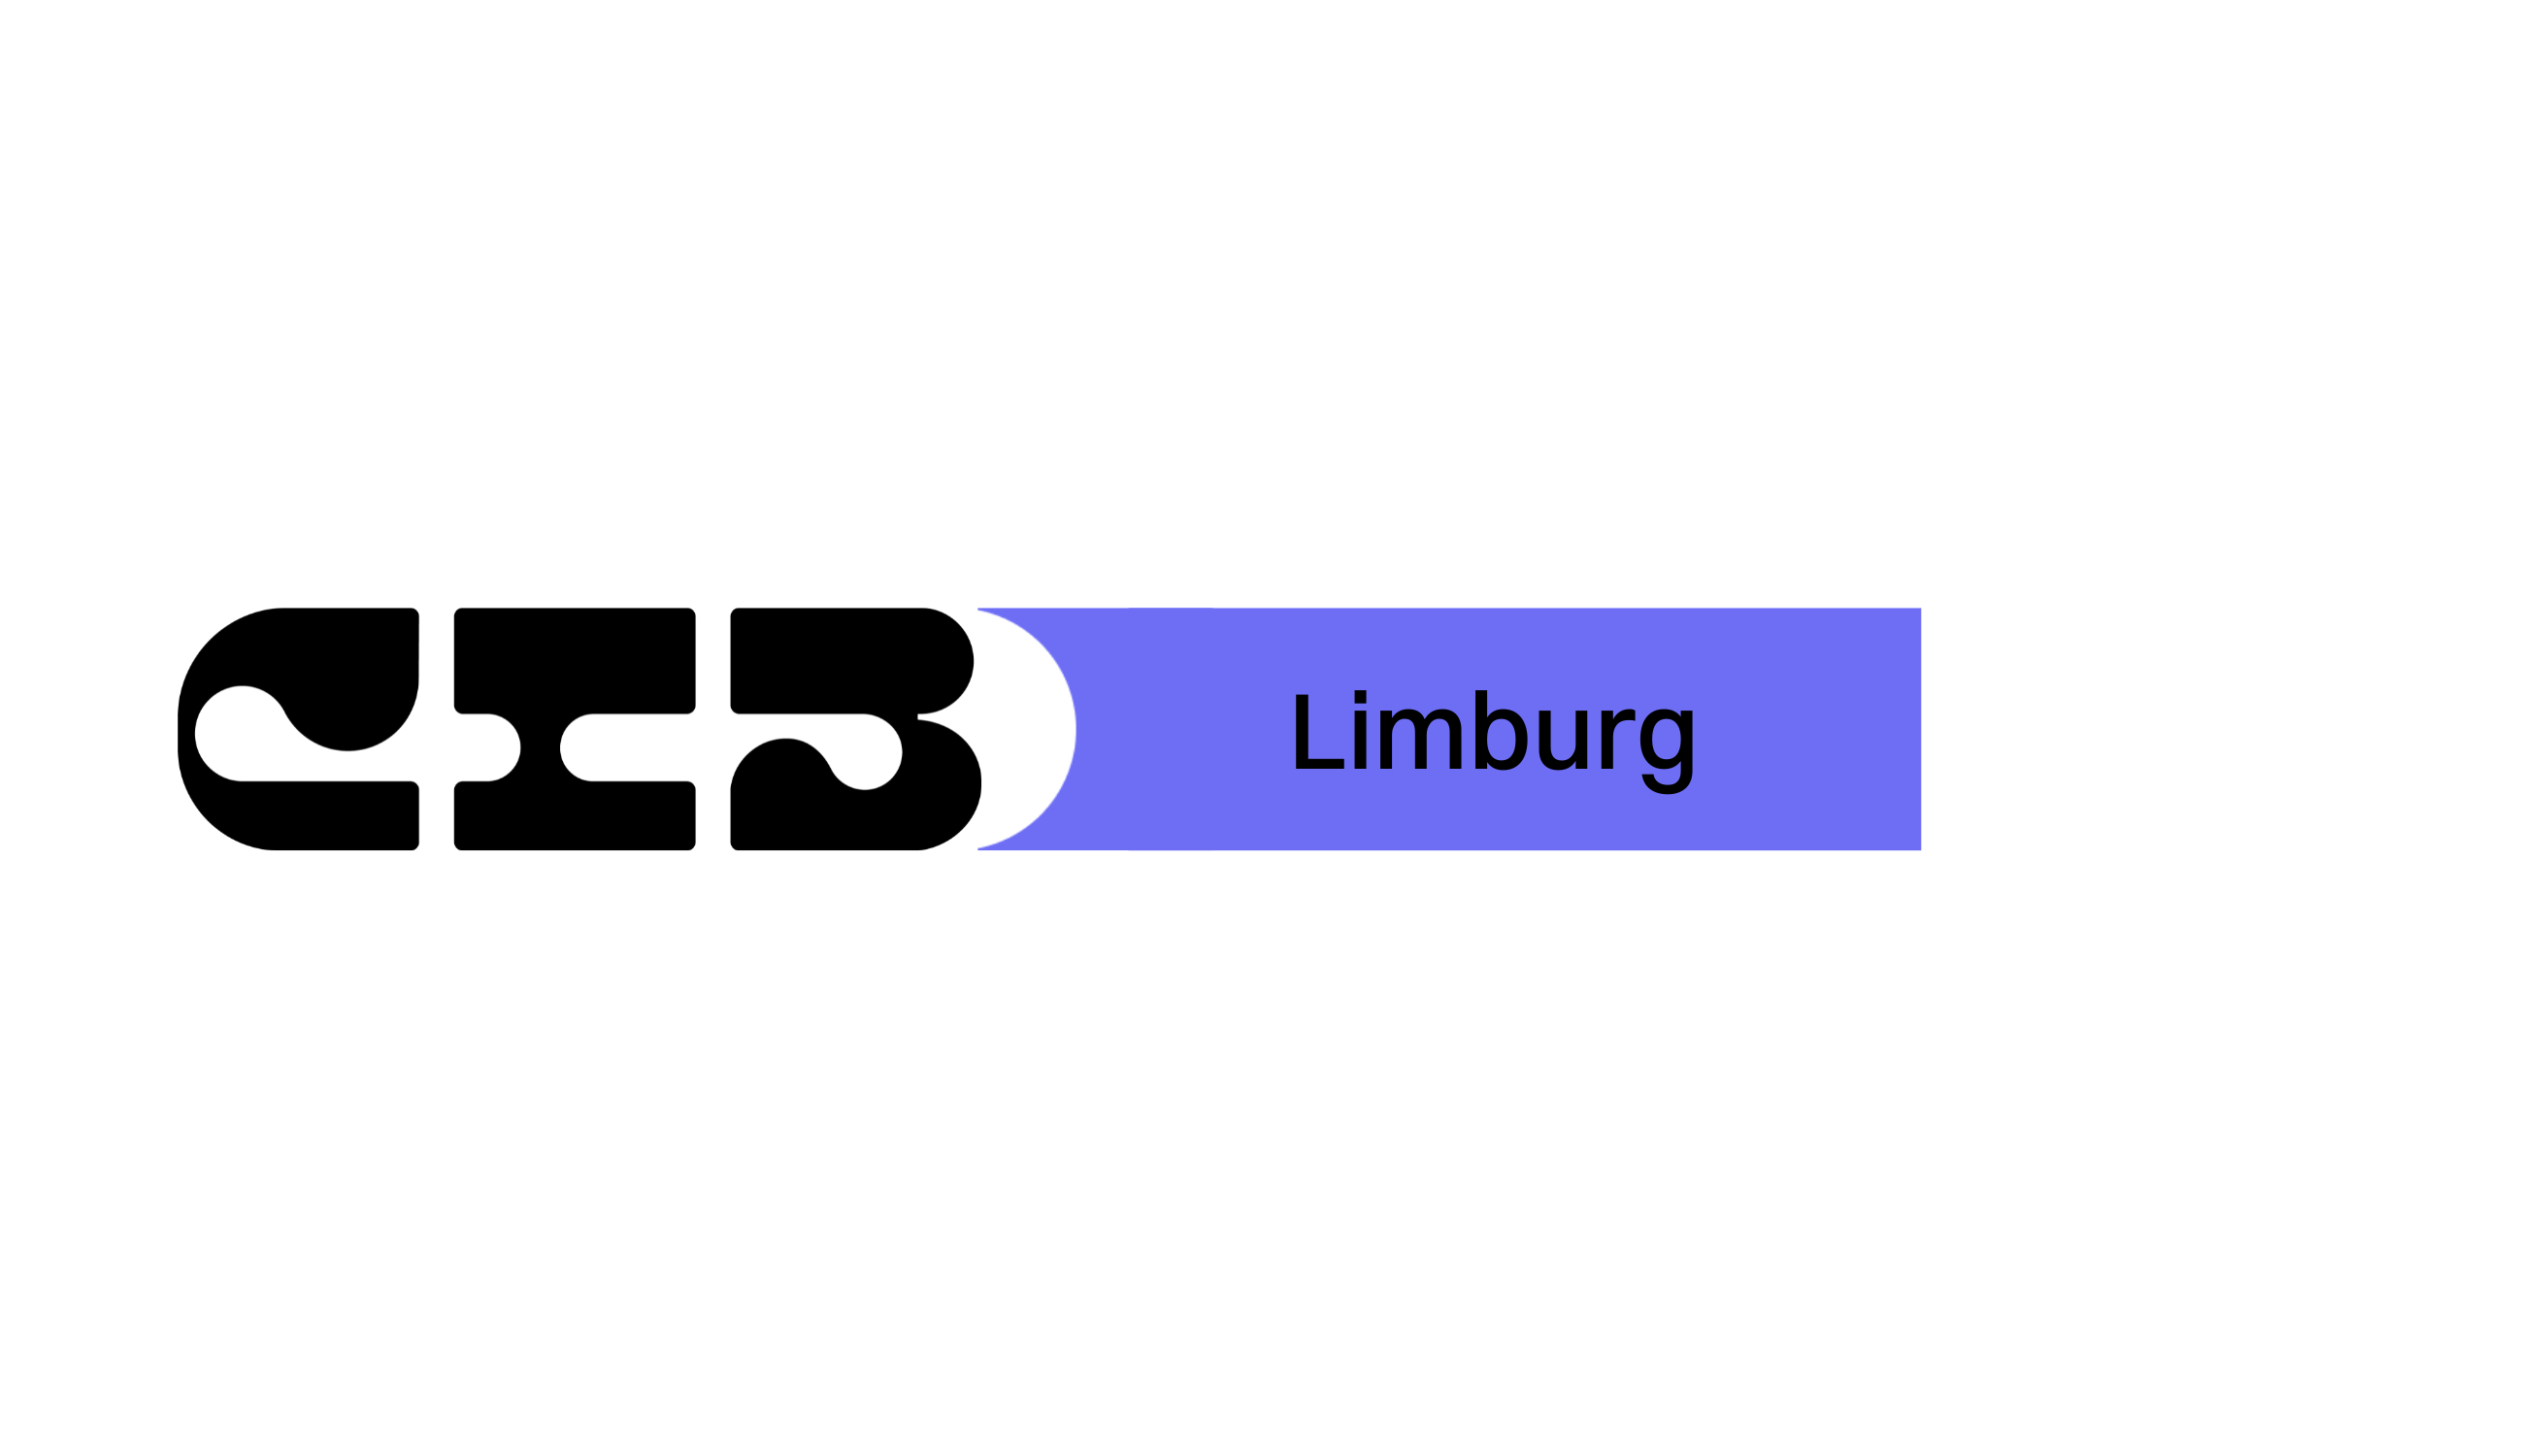 CIB Limburg